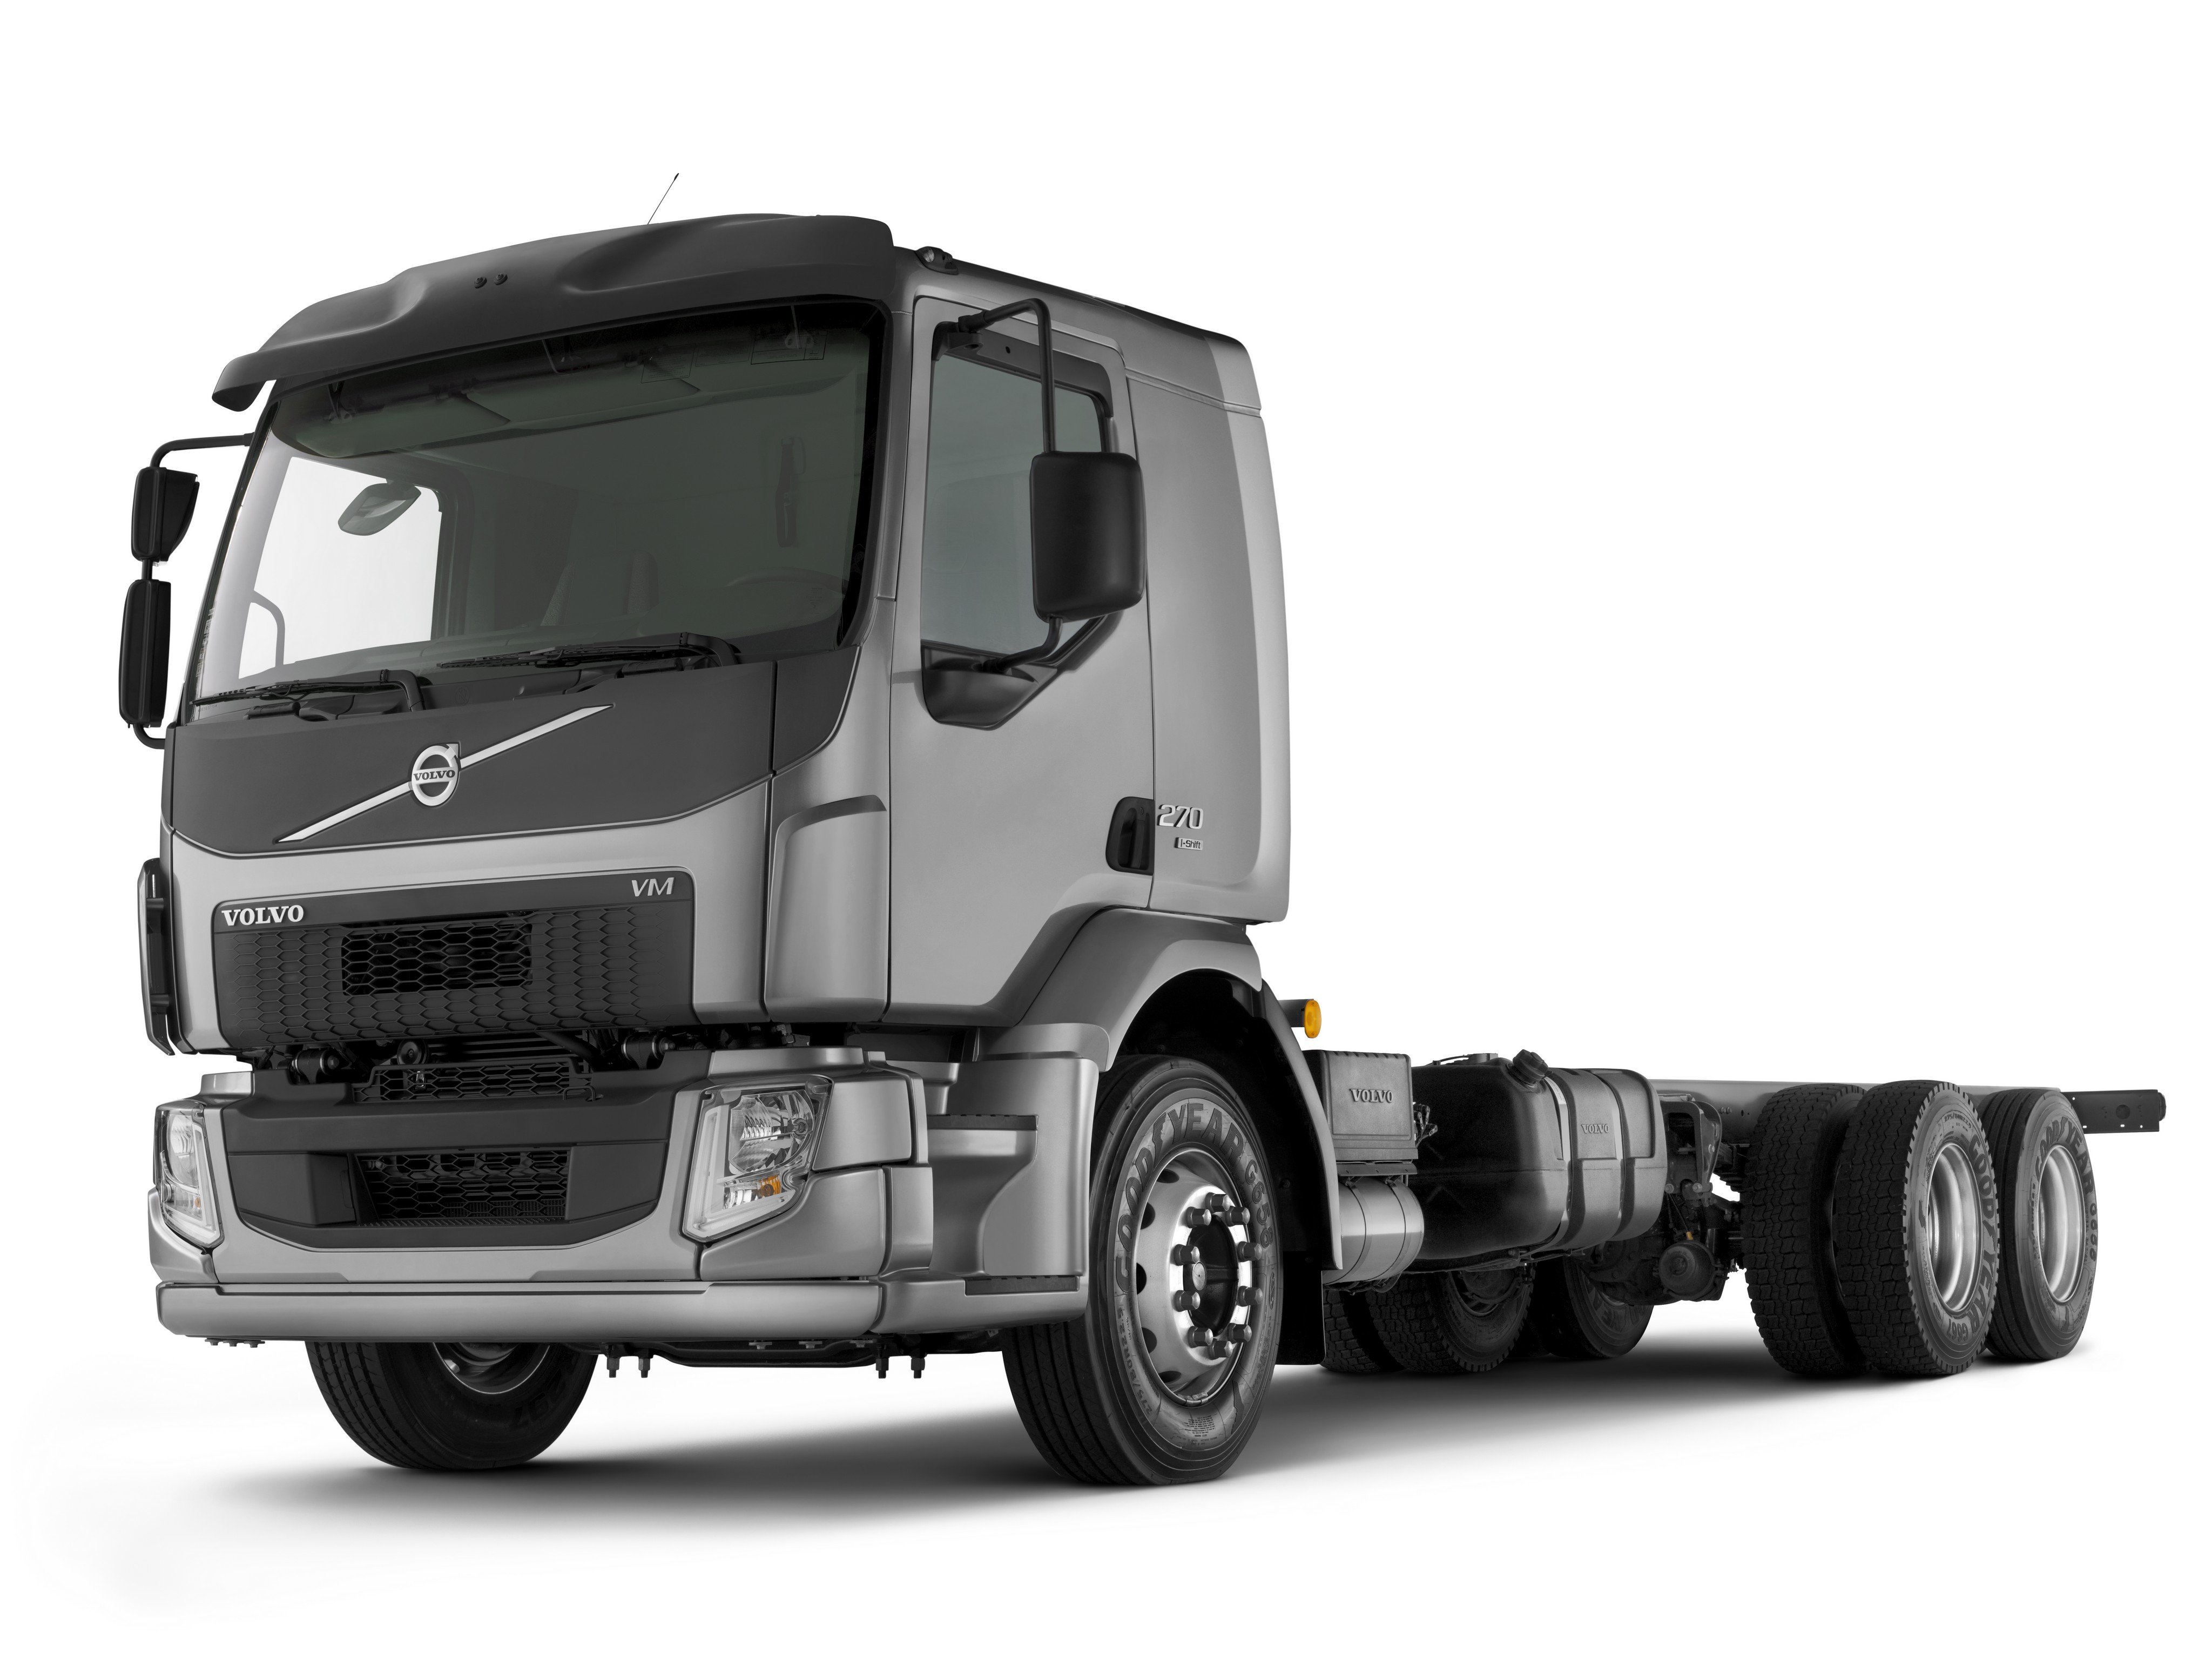 2014, Volvo, V m, 270, 6x2, Semi, Tractor Wallpaper